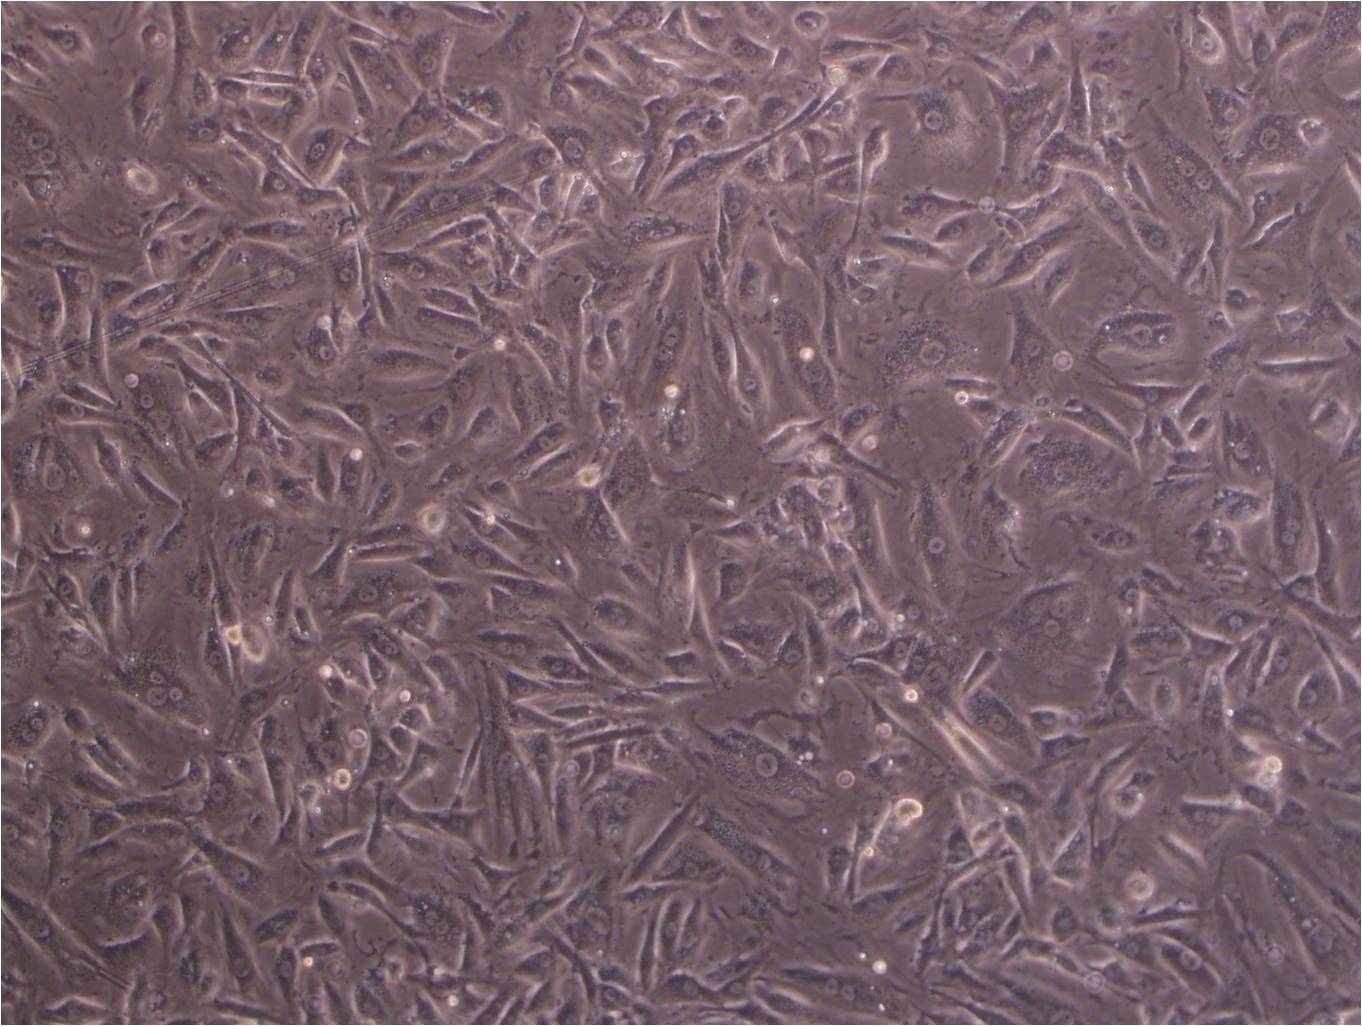 TE-14 epithelioid cells人食管癌细胞系